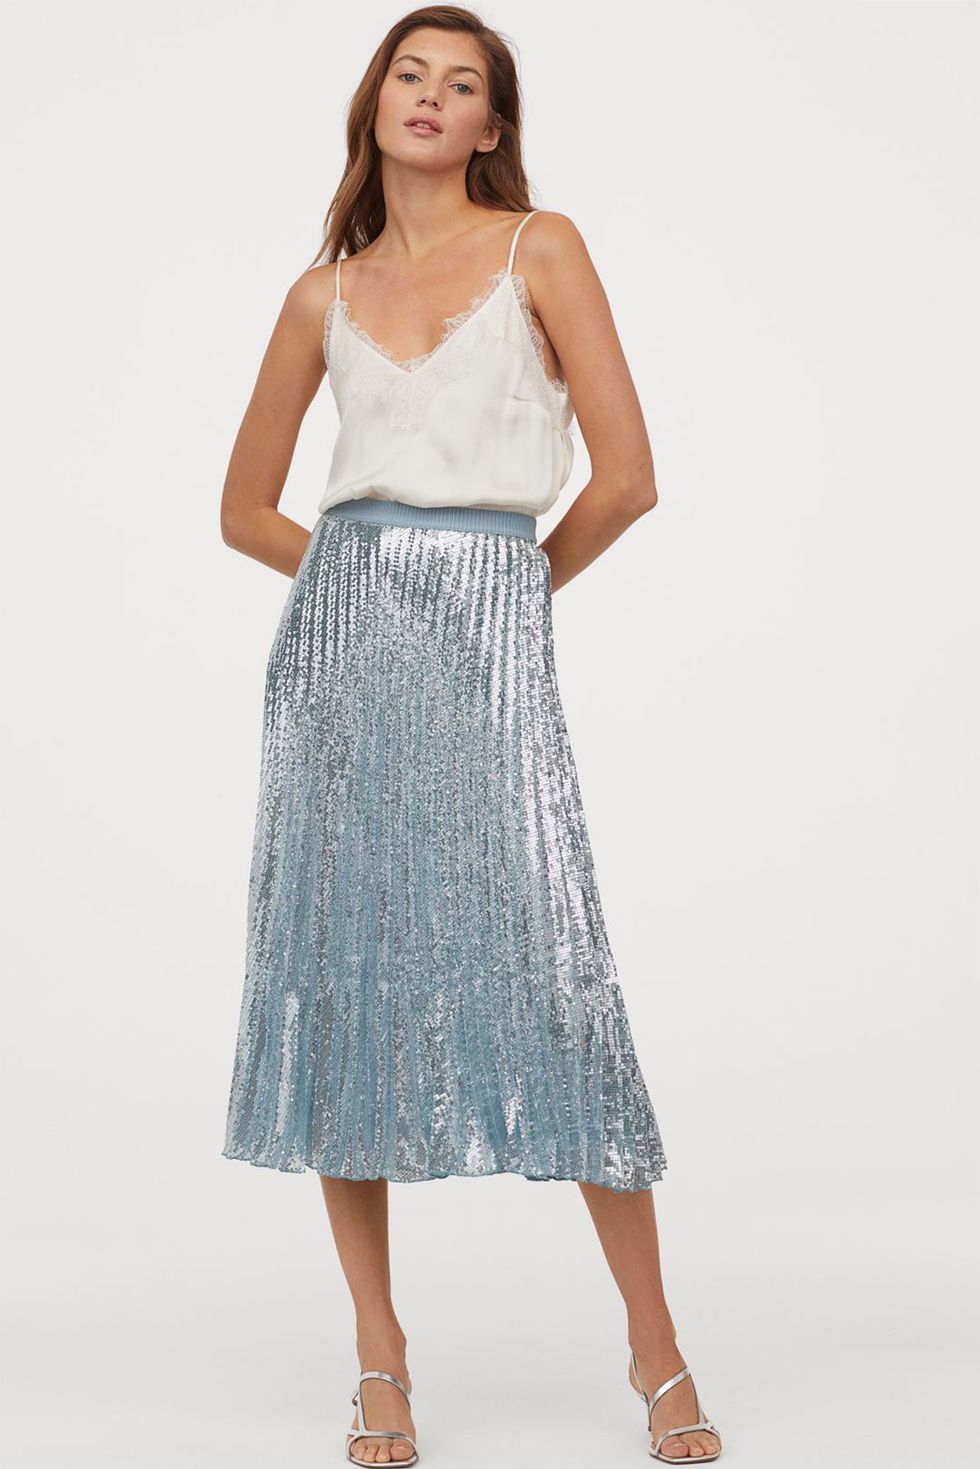 increíble falda plisada de lentejuelas de H&M es estilo